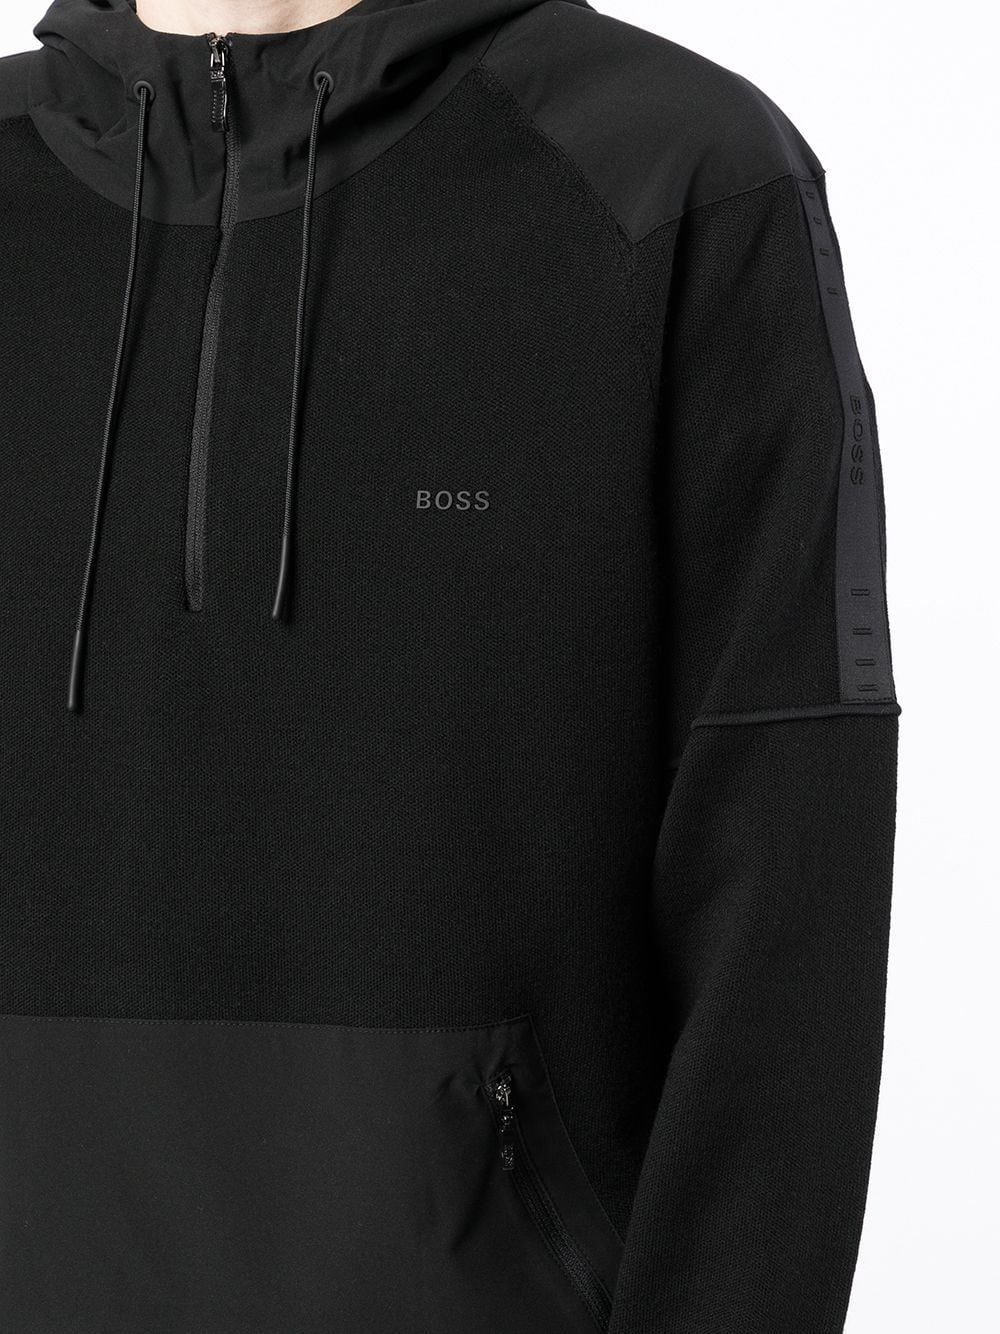 BOSS Tanos drawstring hoodie Black - MAISONDEFASHION.COM